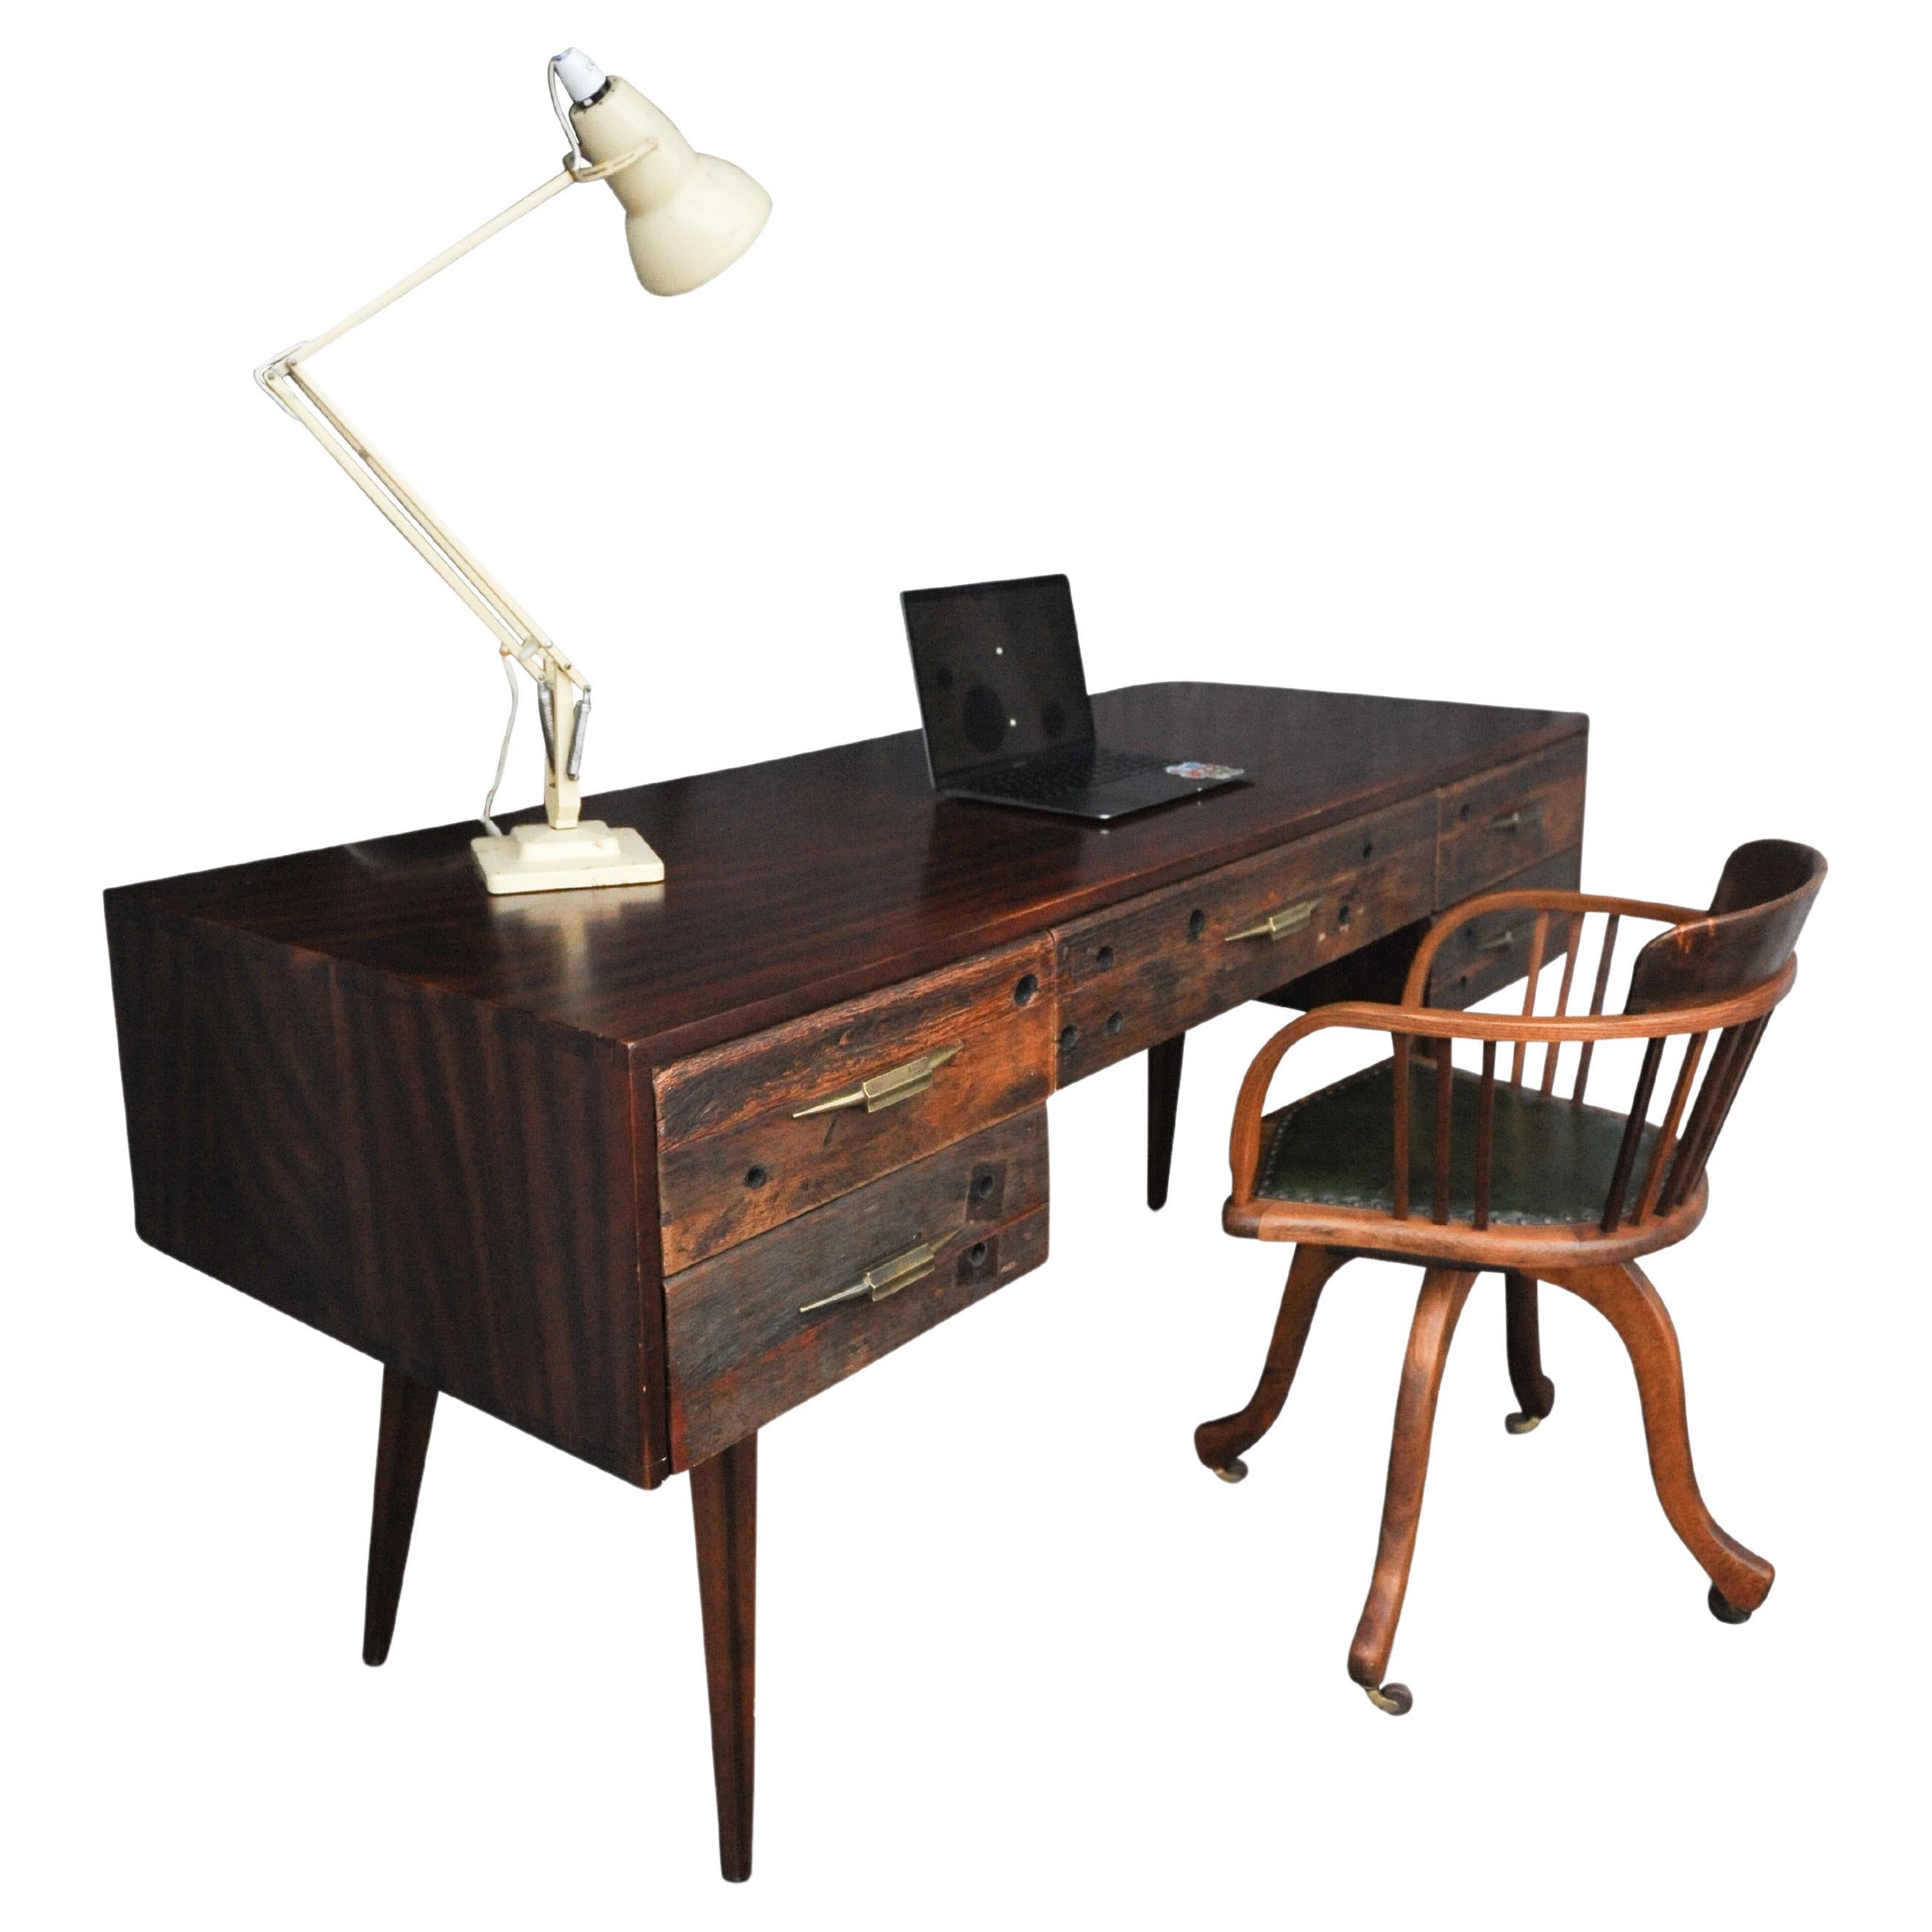 Schreibtisch aus Hartholz und aufgearbeitetem Holz mit fünf Schubladen und vergoldeten Griffen